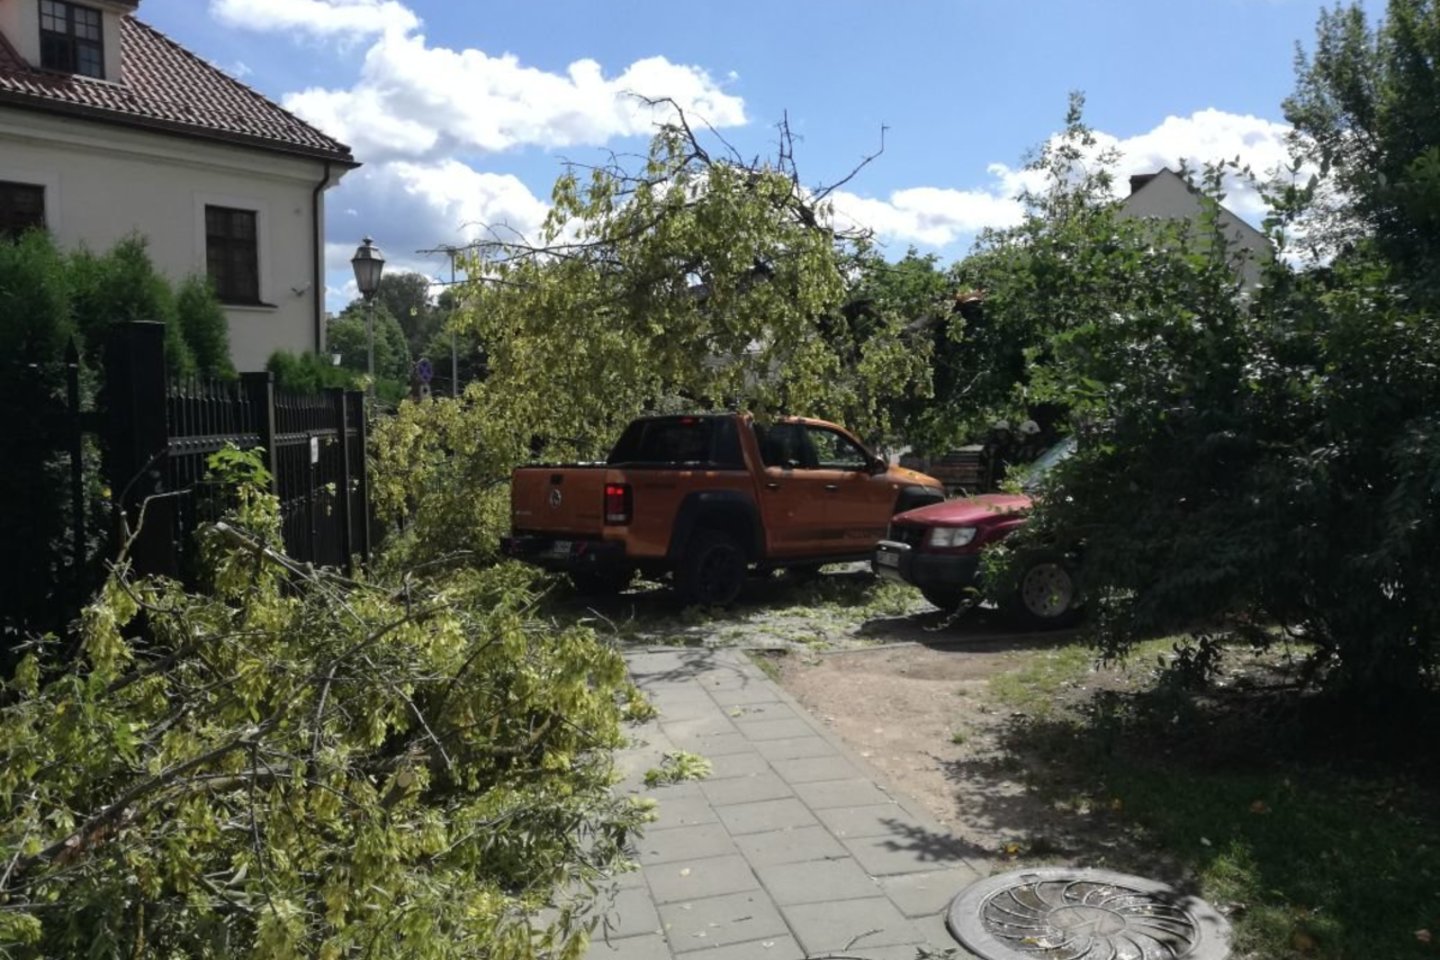  Prie sostinės Bernardinų sodų medis užvirto ant automobilio su vairuotoju.<br> Skaitytojo Tomo nuotr.